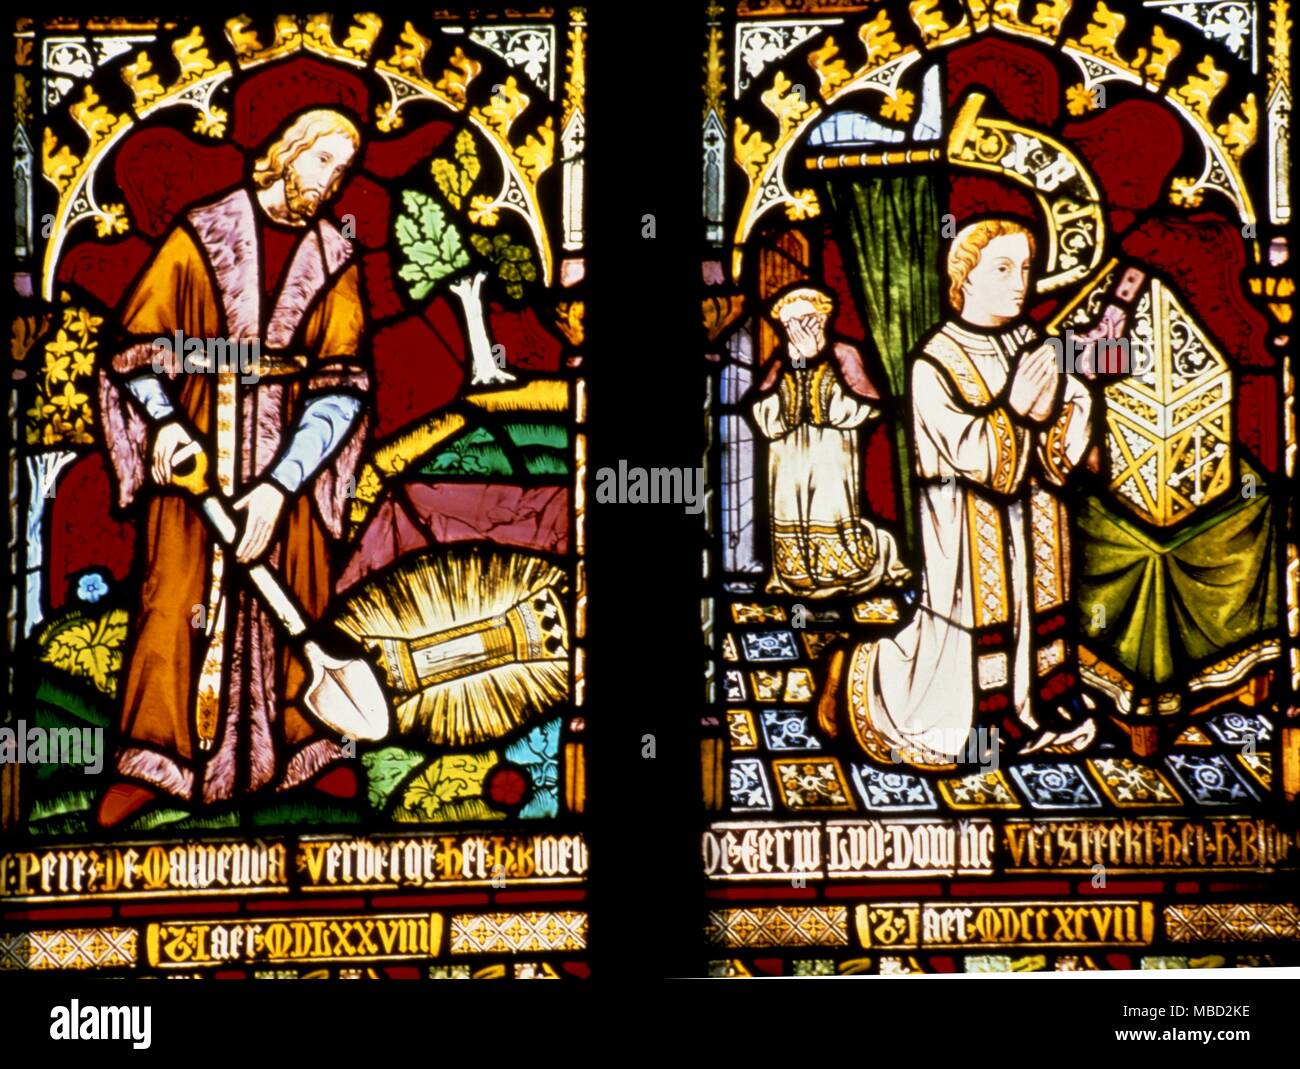 Brügge, Belgien. Glasfenster in der Kapelle des Heiligen Blutes, zeigt das heilige Blut von Jesus in einer Durchstechflasche begraben werden, um ihn zu schützen. Stockfoto